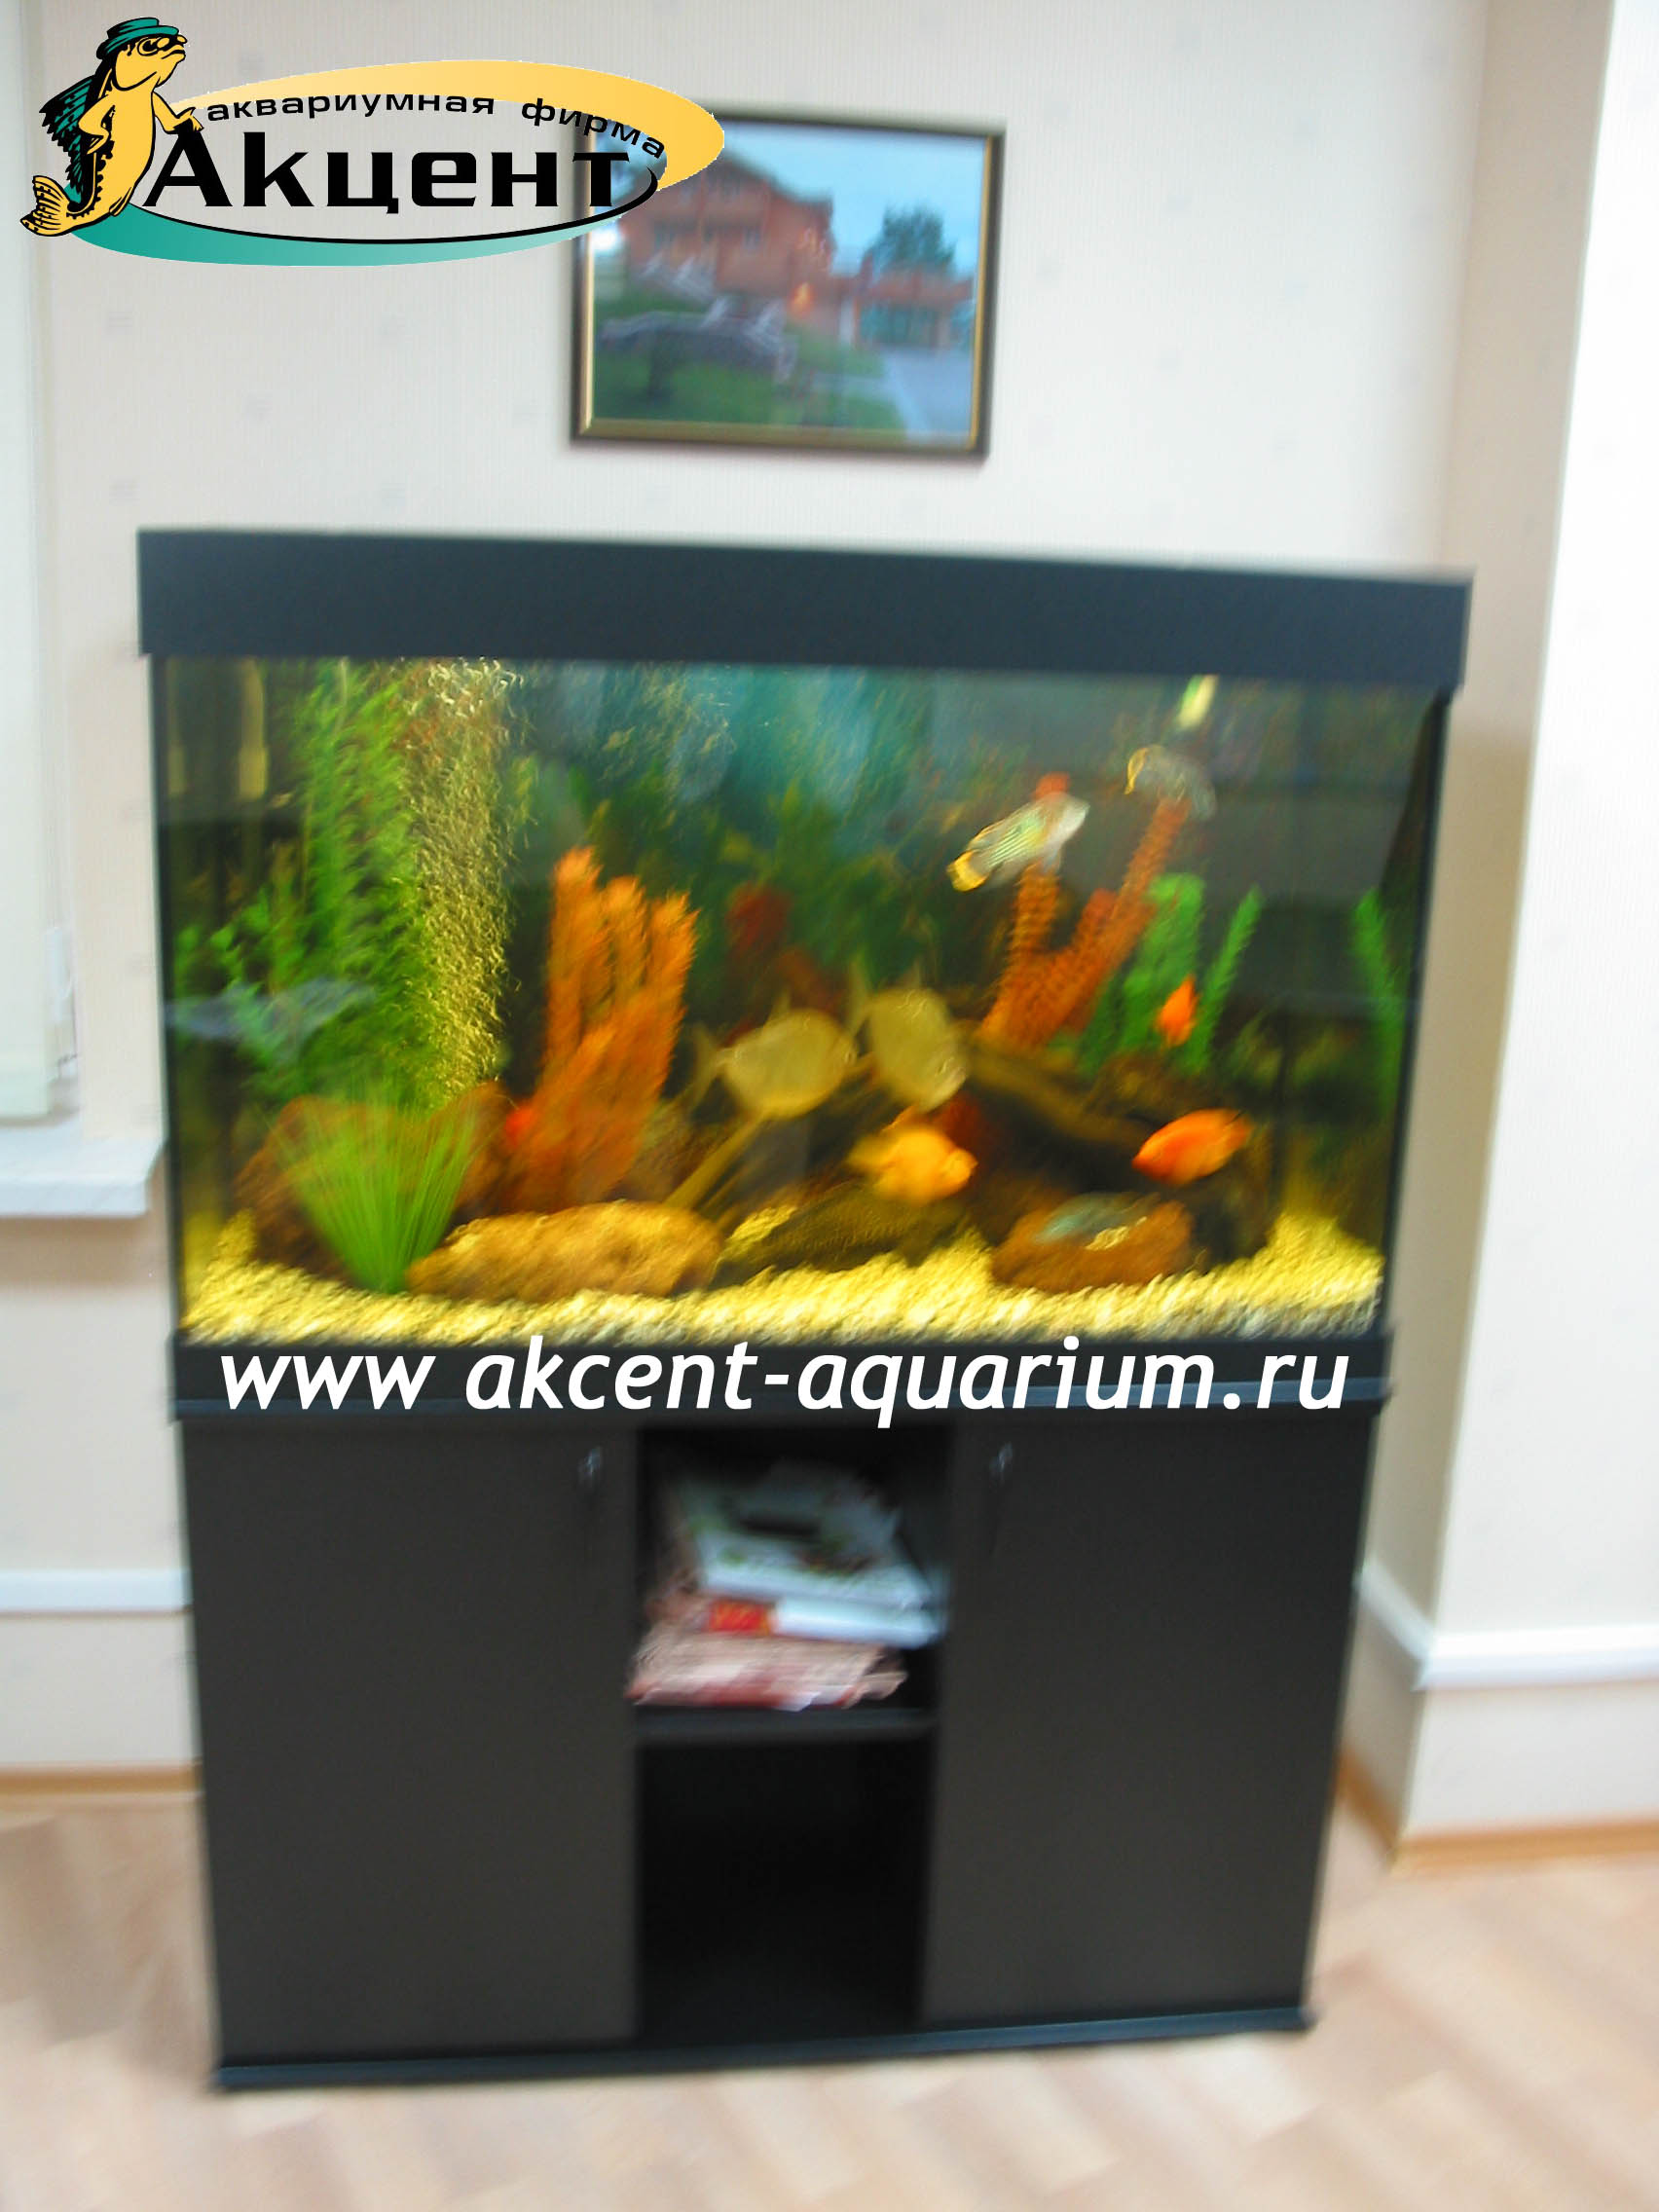 Акцент-аквариум,аквариум 350 литров